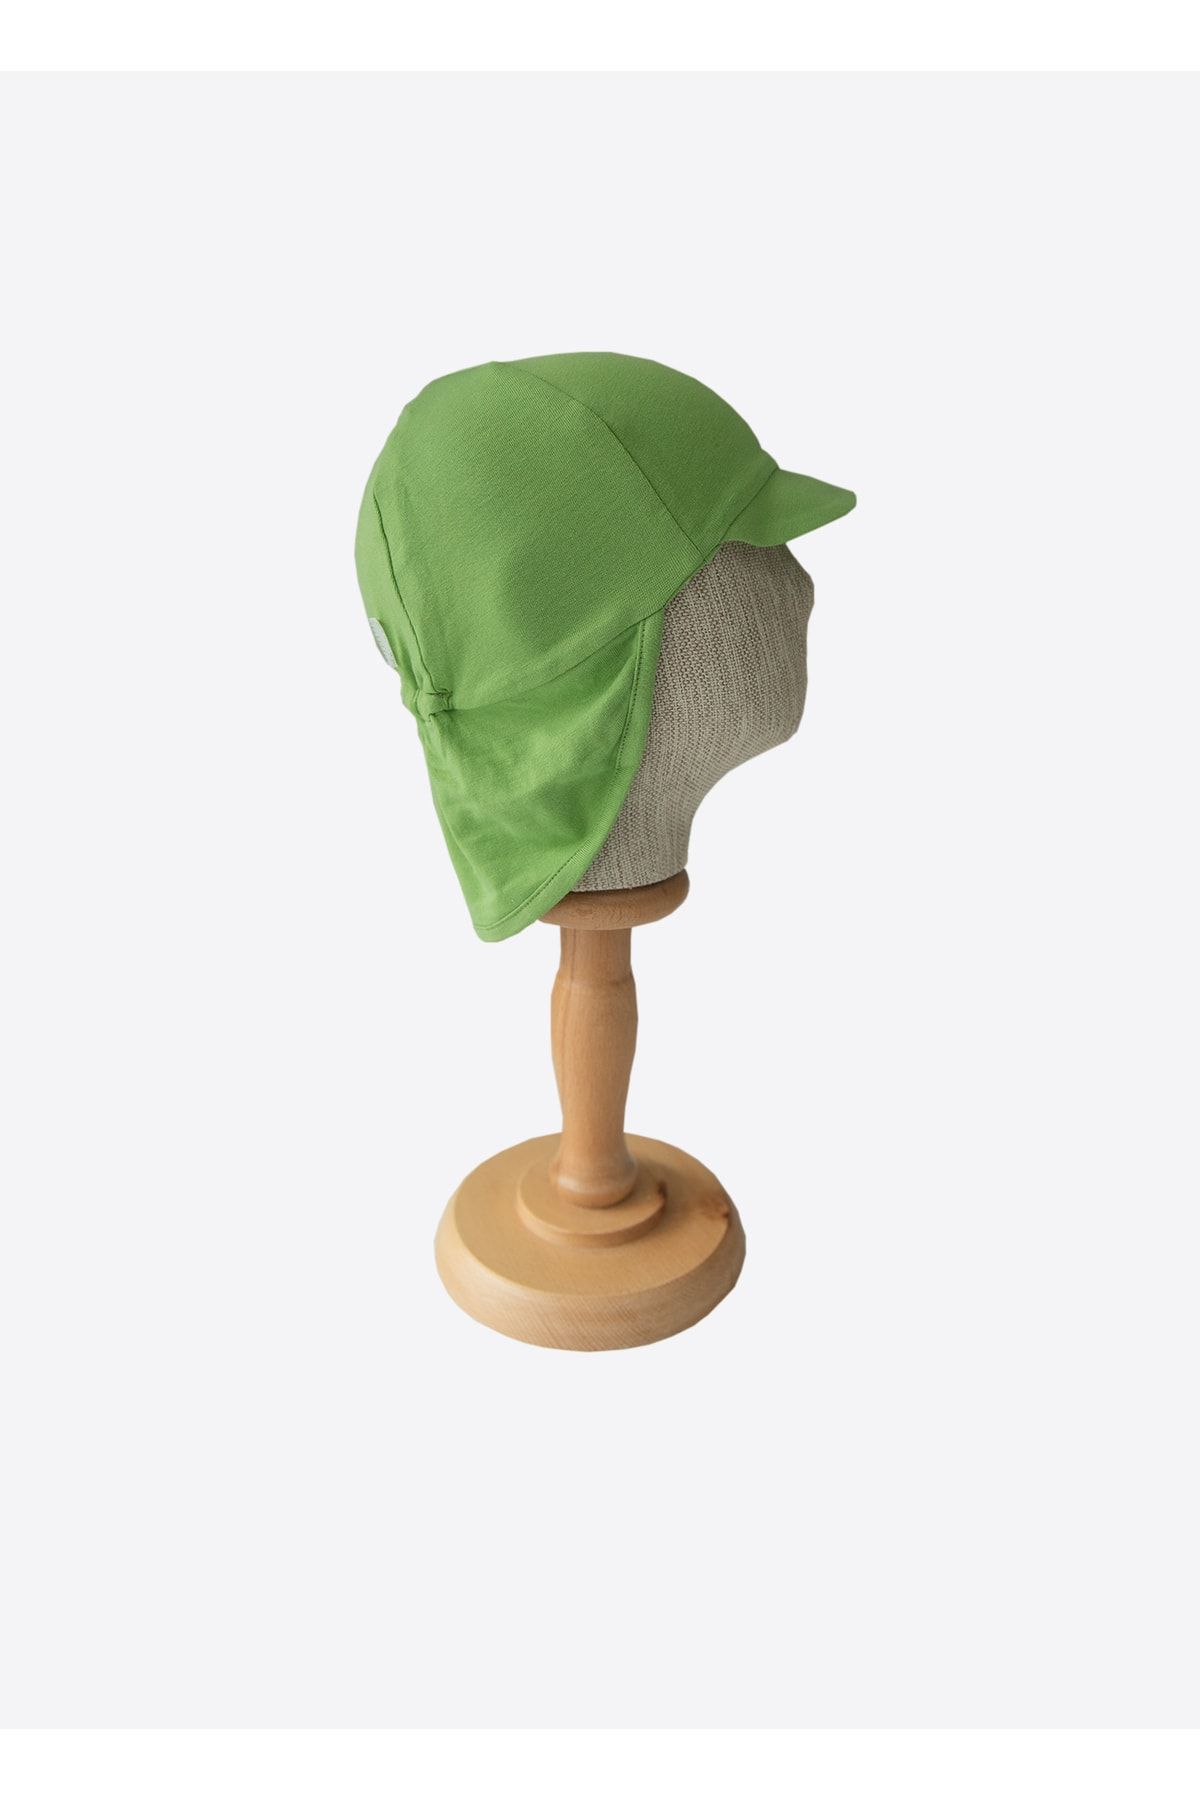 kitikate Organik Marvın Şapka-yeşil